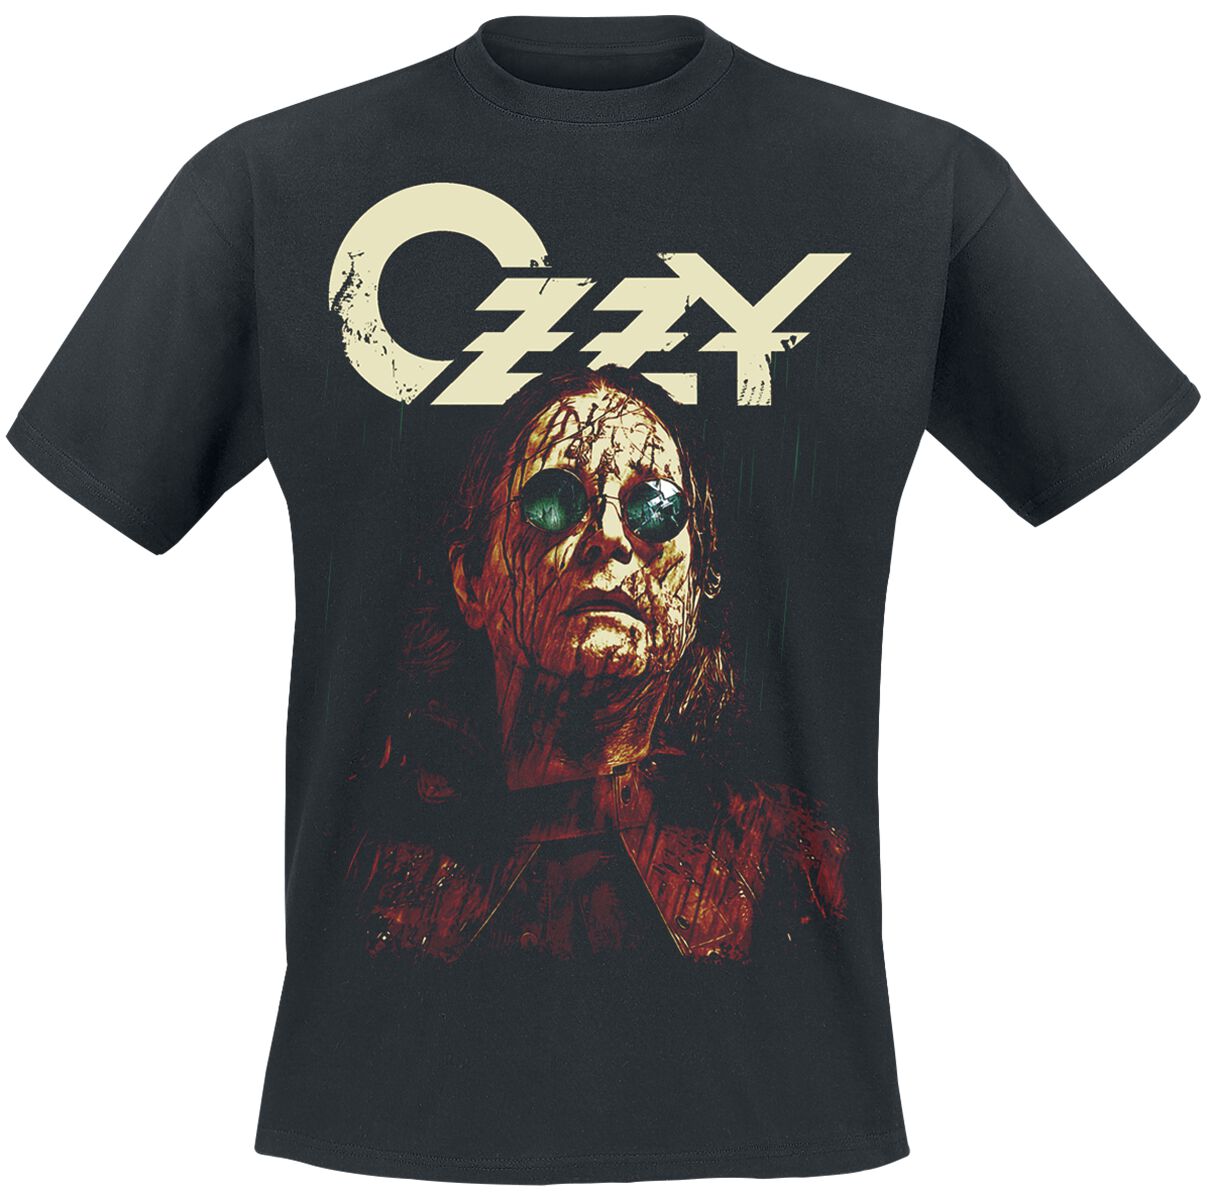 Ozzy Osbourne T-Shirt - Black rain - S bis L - für Männer - Größe S - schwarz  - Lizenziertes Merchandise!